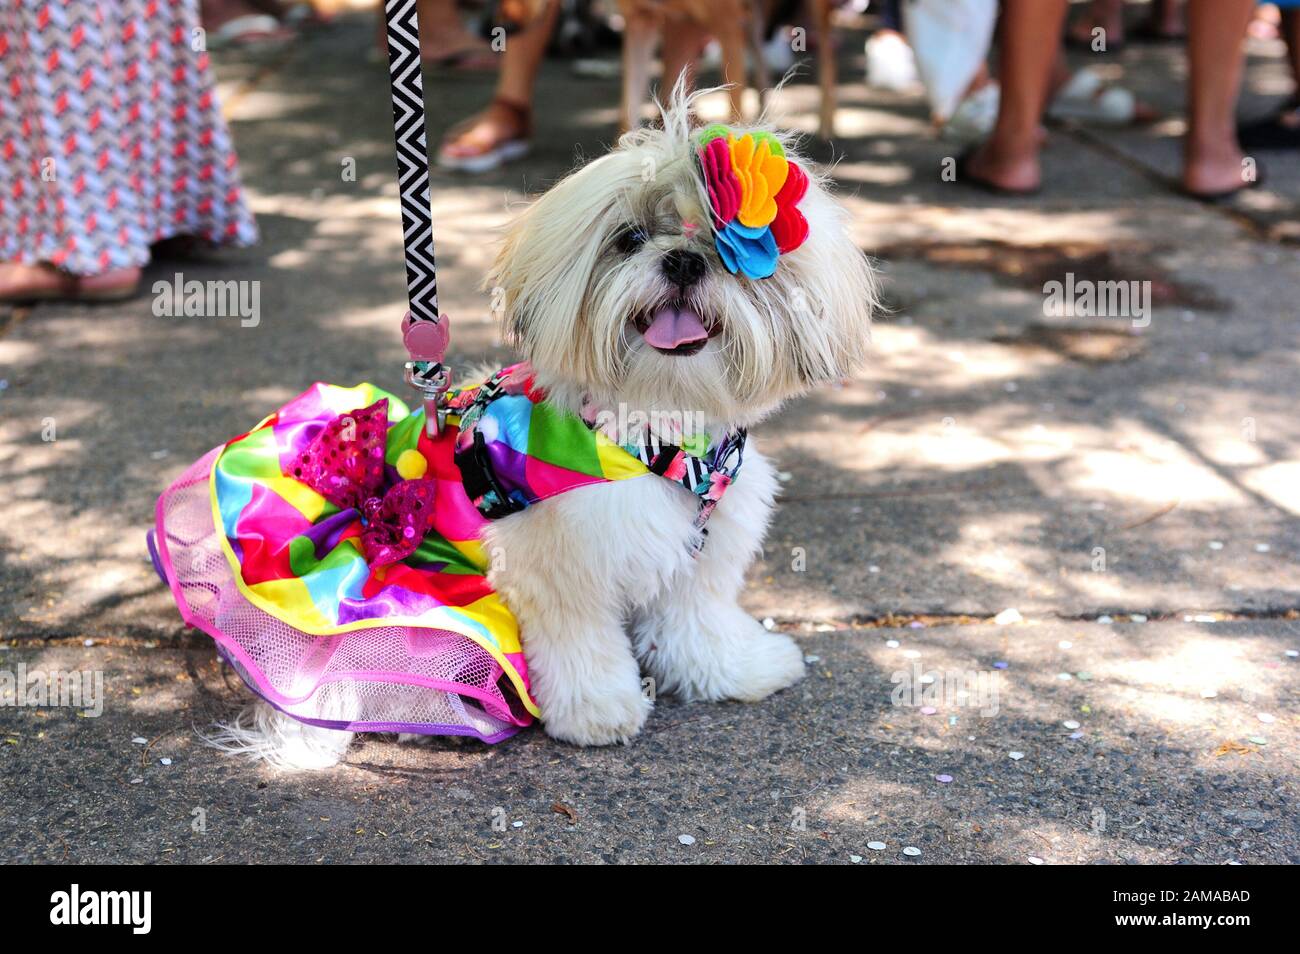 América del Sur, Brasil – 23 de febrero de 2019: Se ven perros disfrazados  durante la fiesta